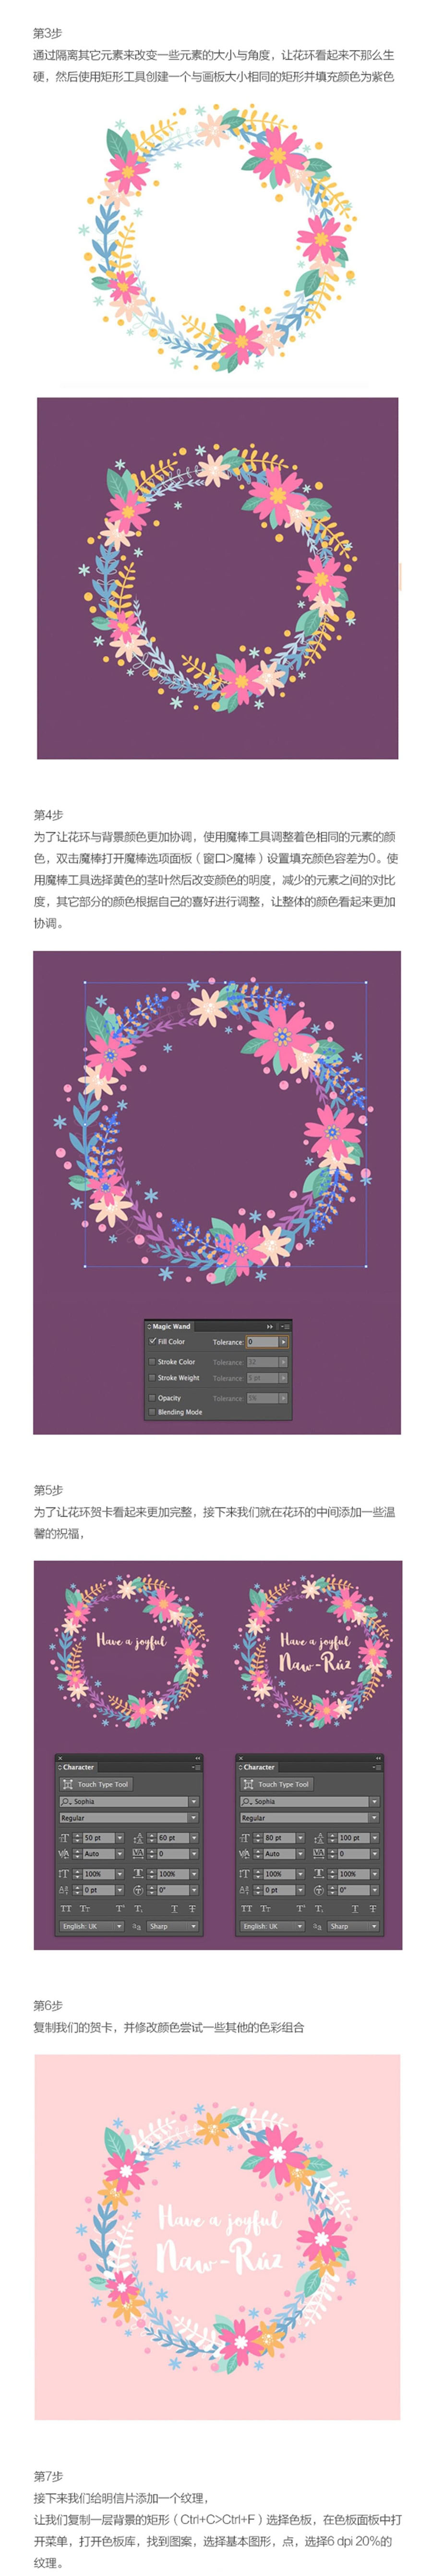 花朵插画：AI绘制时尚的花环插画作品,PS教程,素材中国网